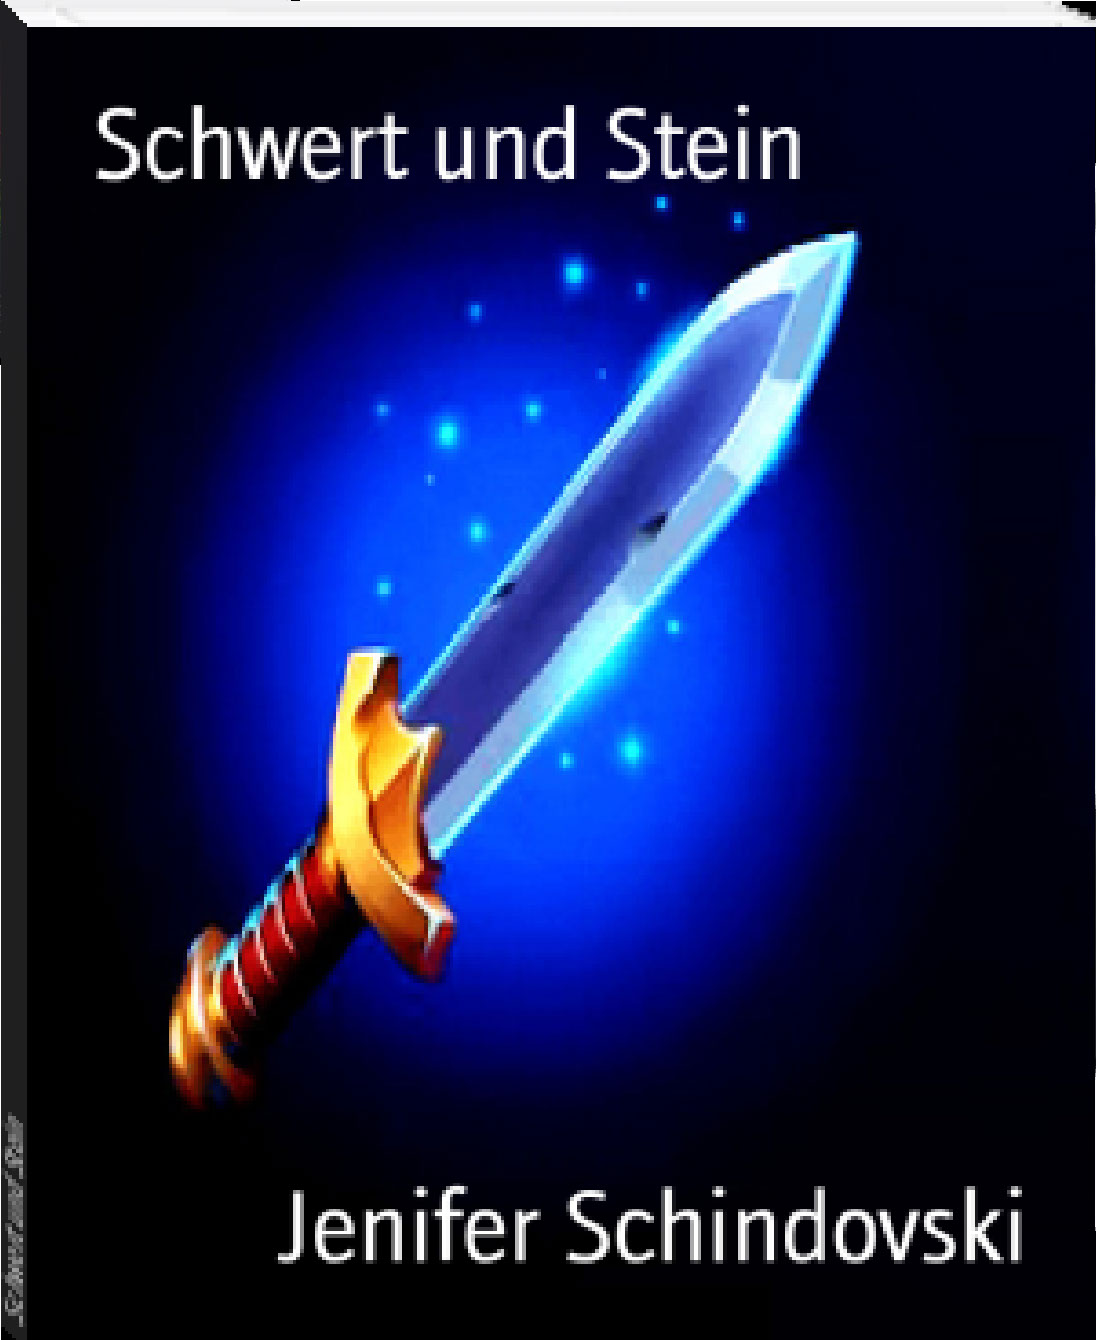 Schwert und Stein rendition image